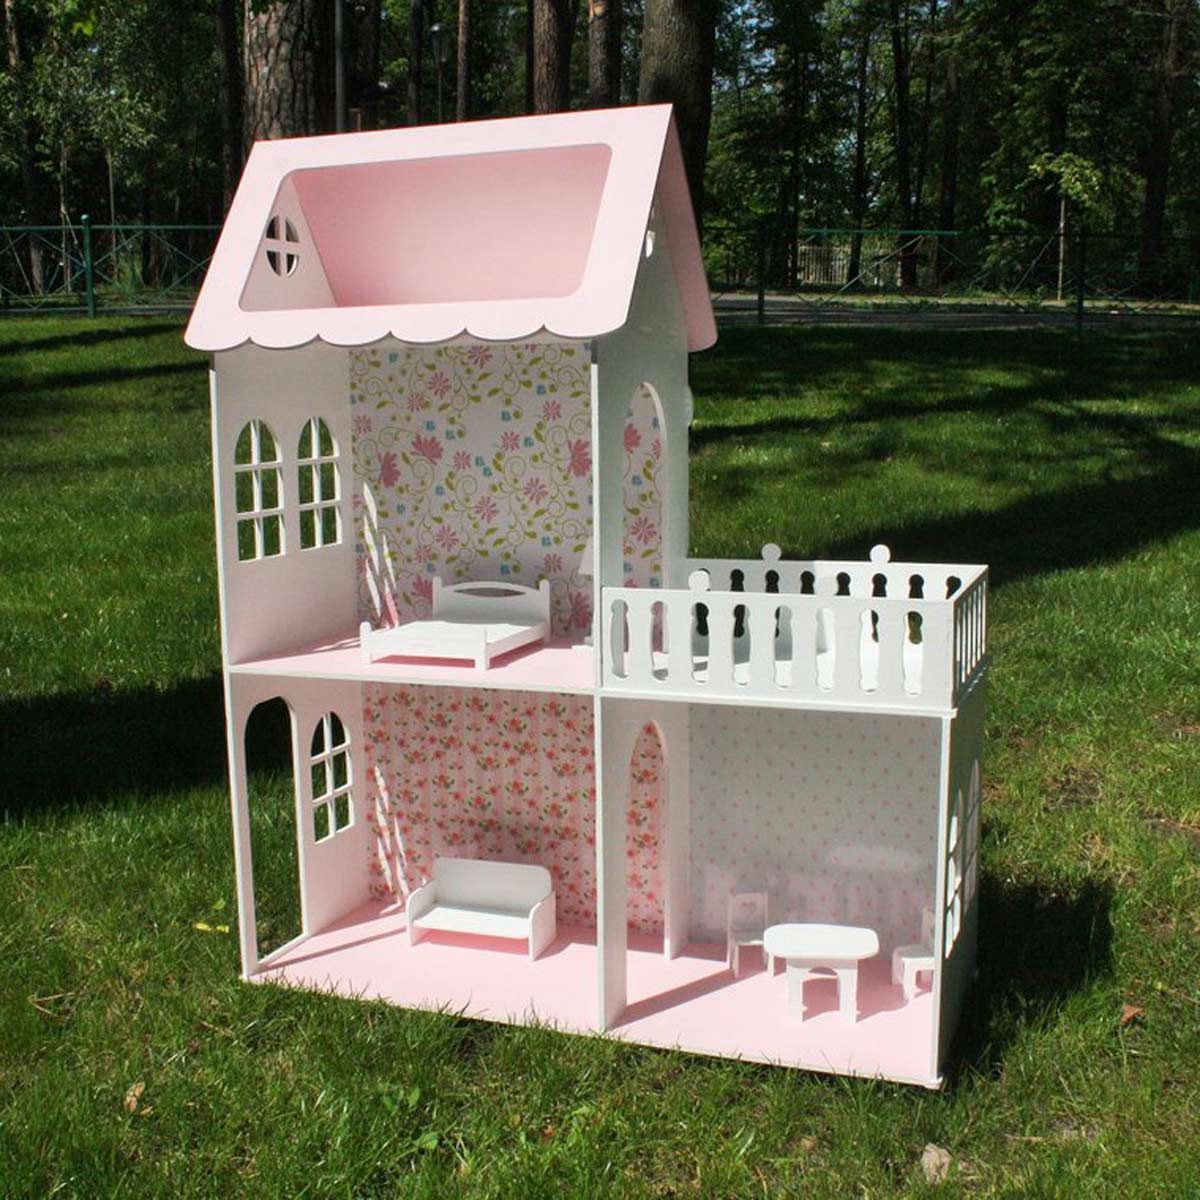 Røg Det er billigt niece 10 Homemade Barbie Houses You Wish You Lived In | Family Handyman